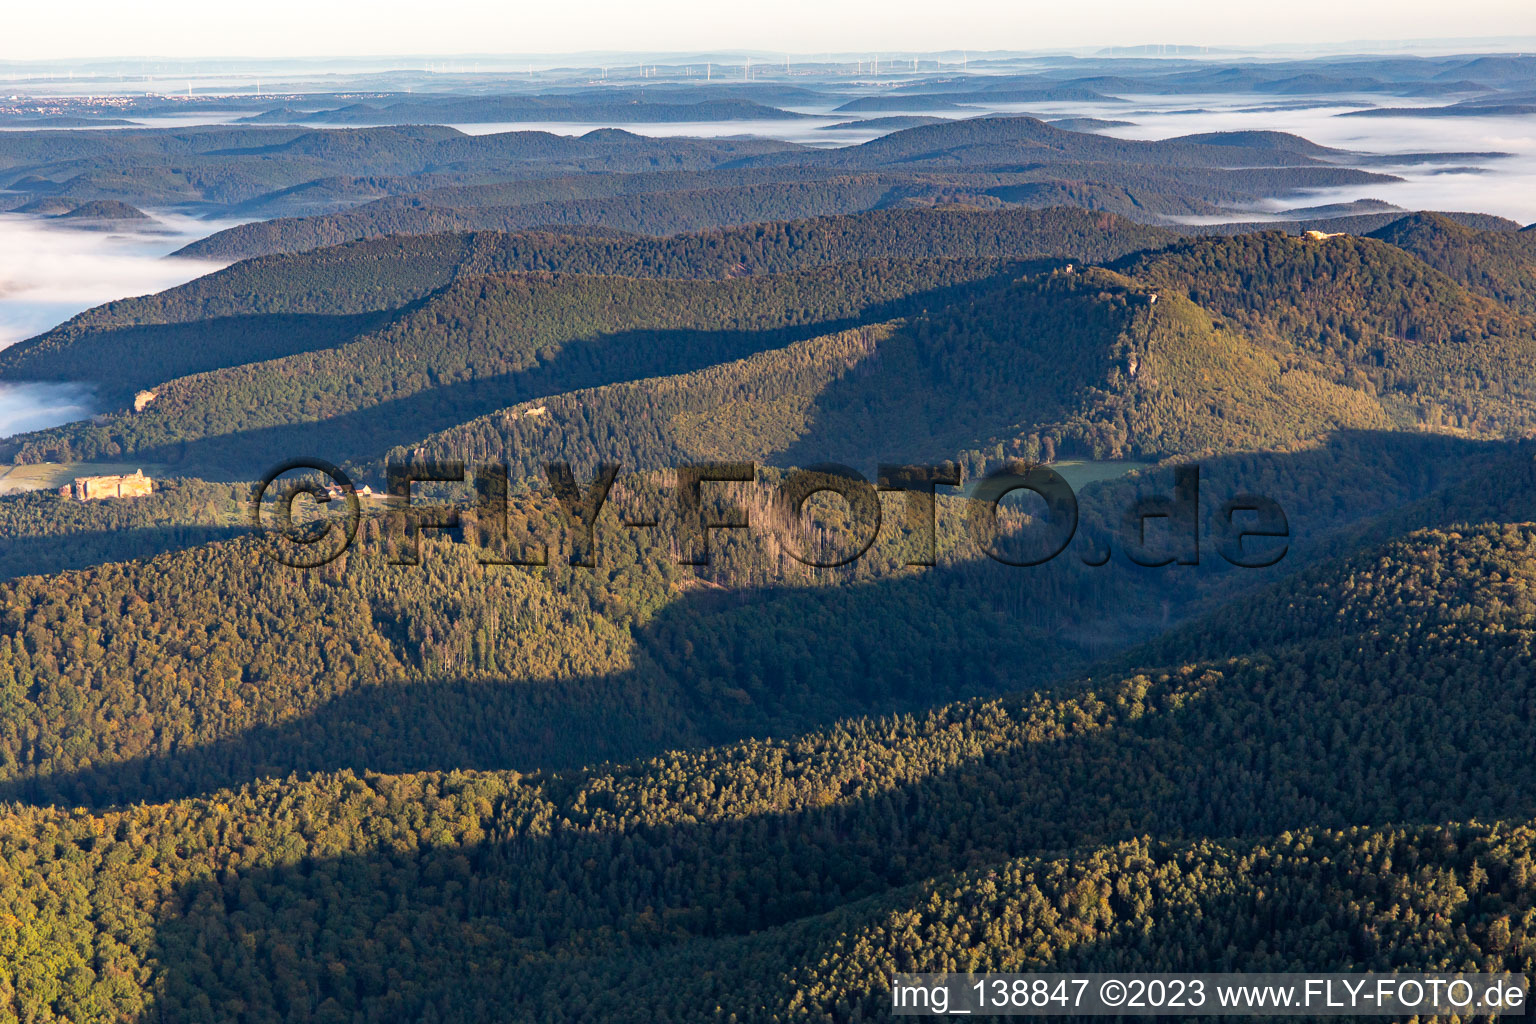 Wingen im Bundesland Rheinland-Pfalz, Deutschland von oben gesehen